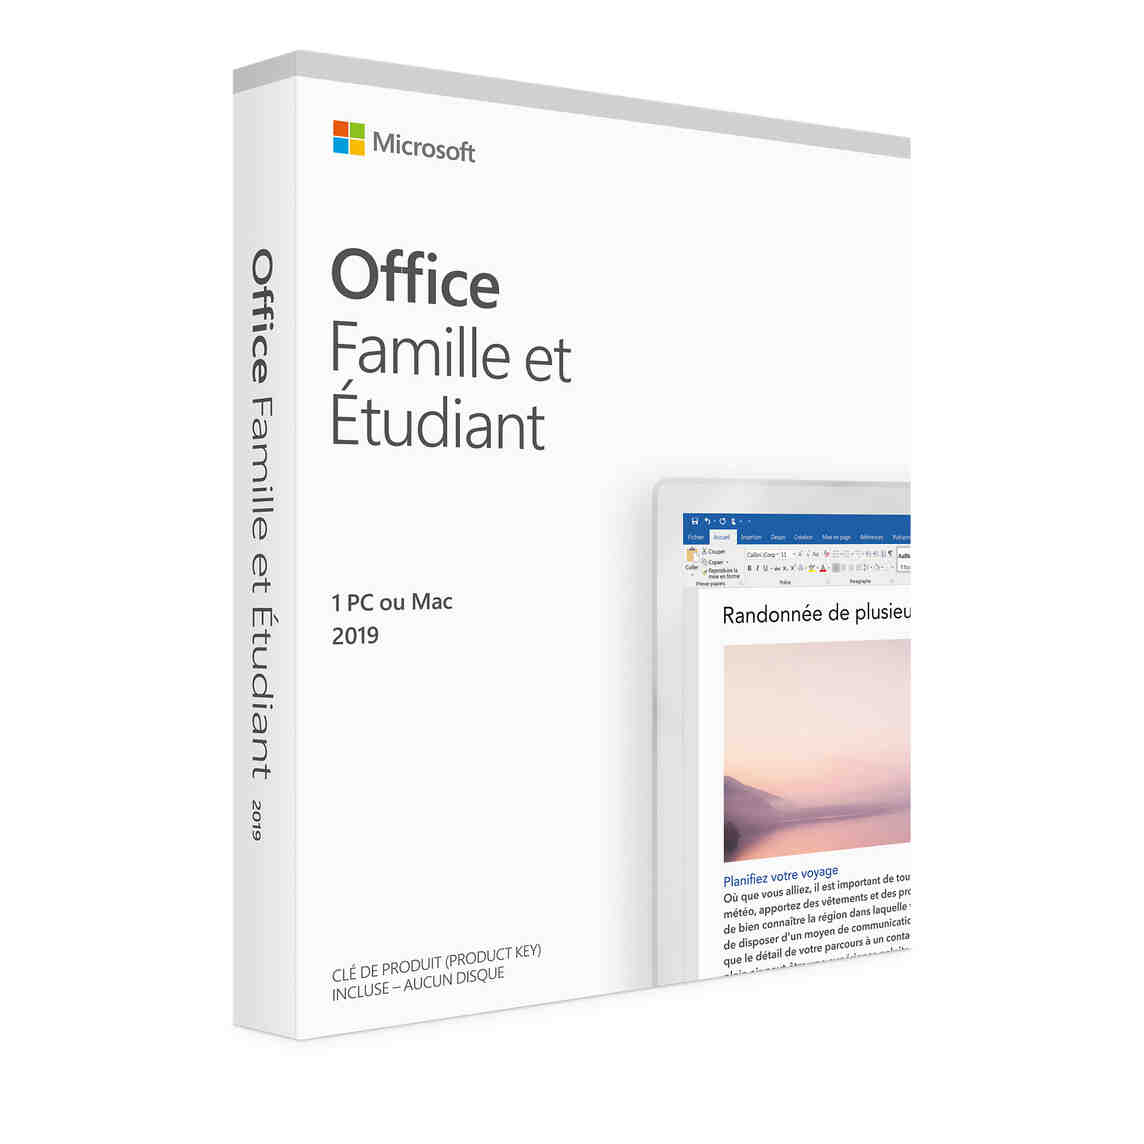 Quel est le prix de Microsoft Office 365 ?